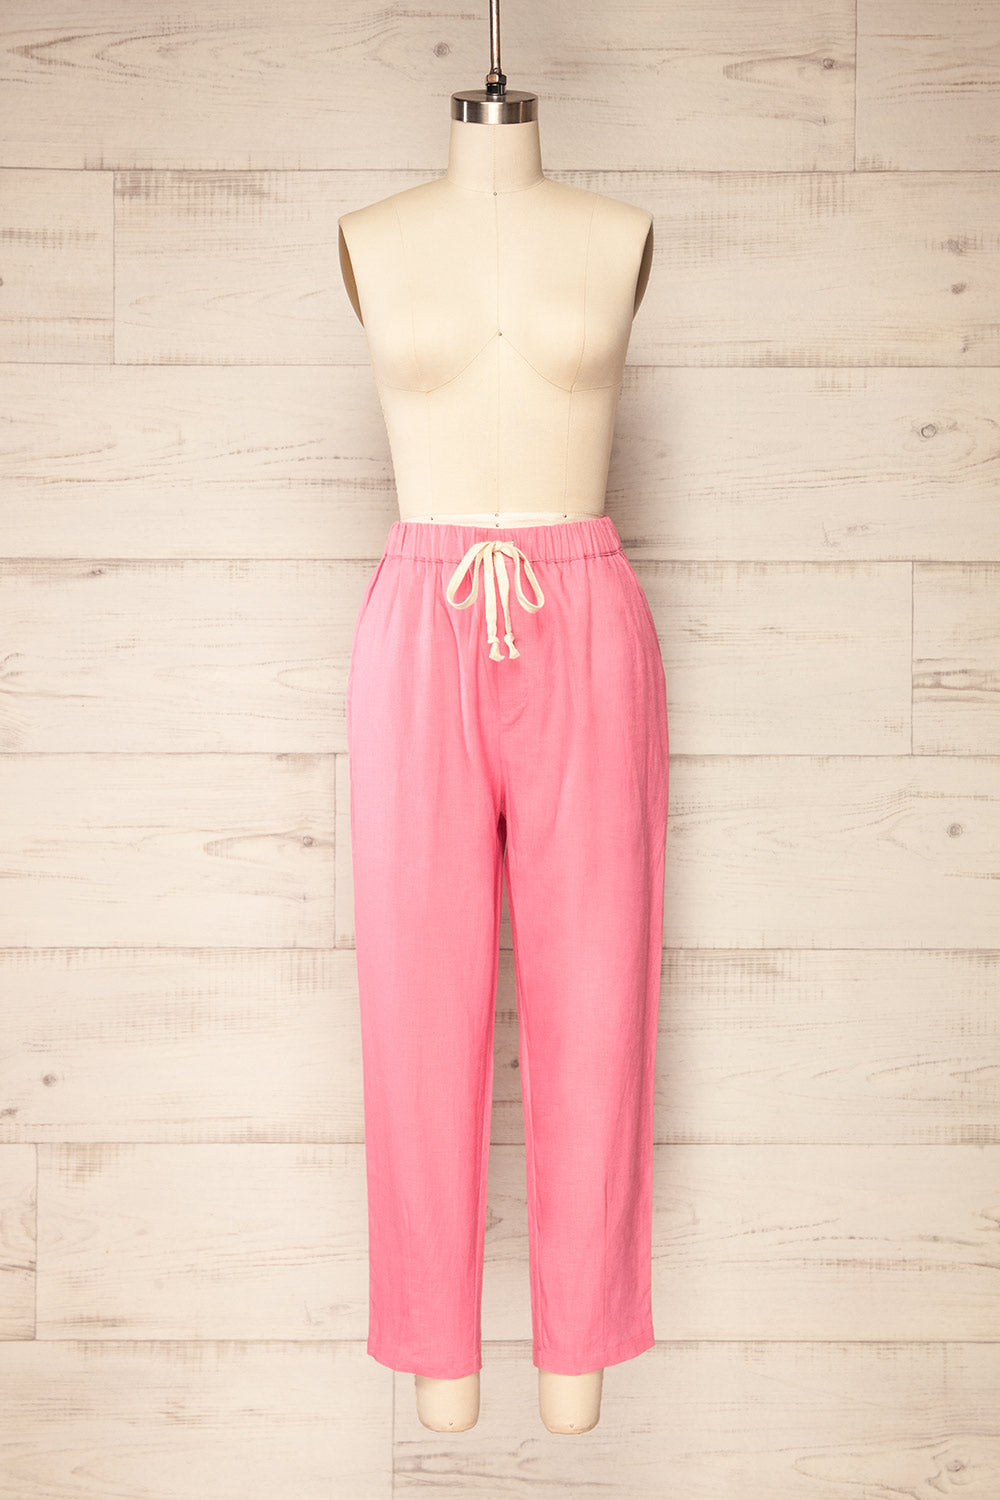 Trincao Pink Linen Pants with Drawstrings | La petite garçonne front view